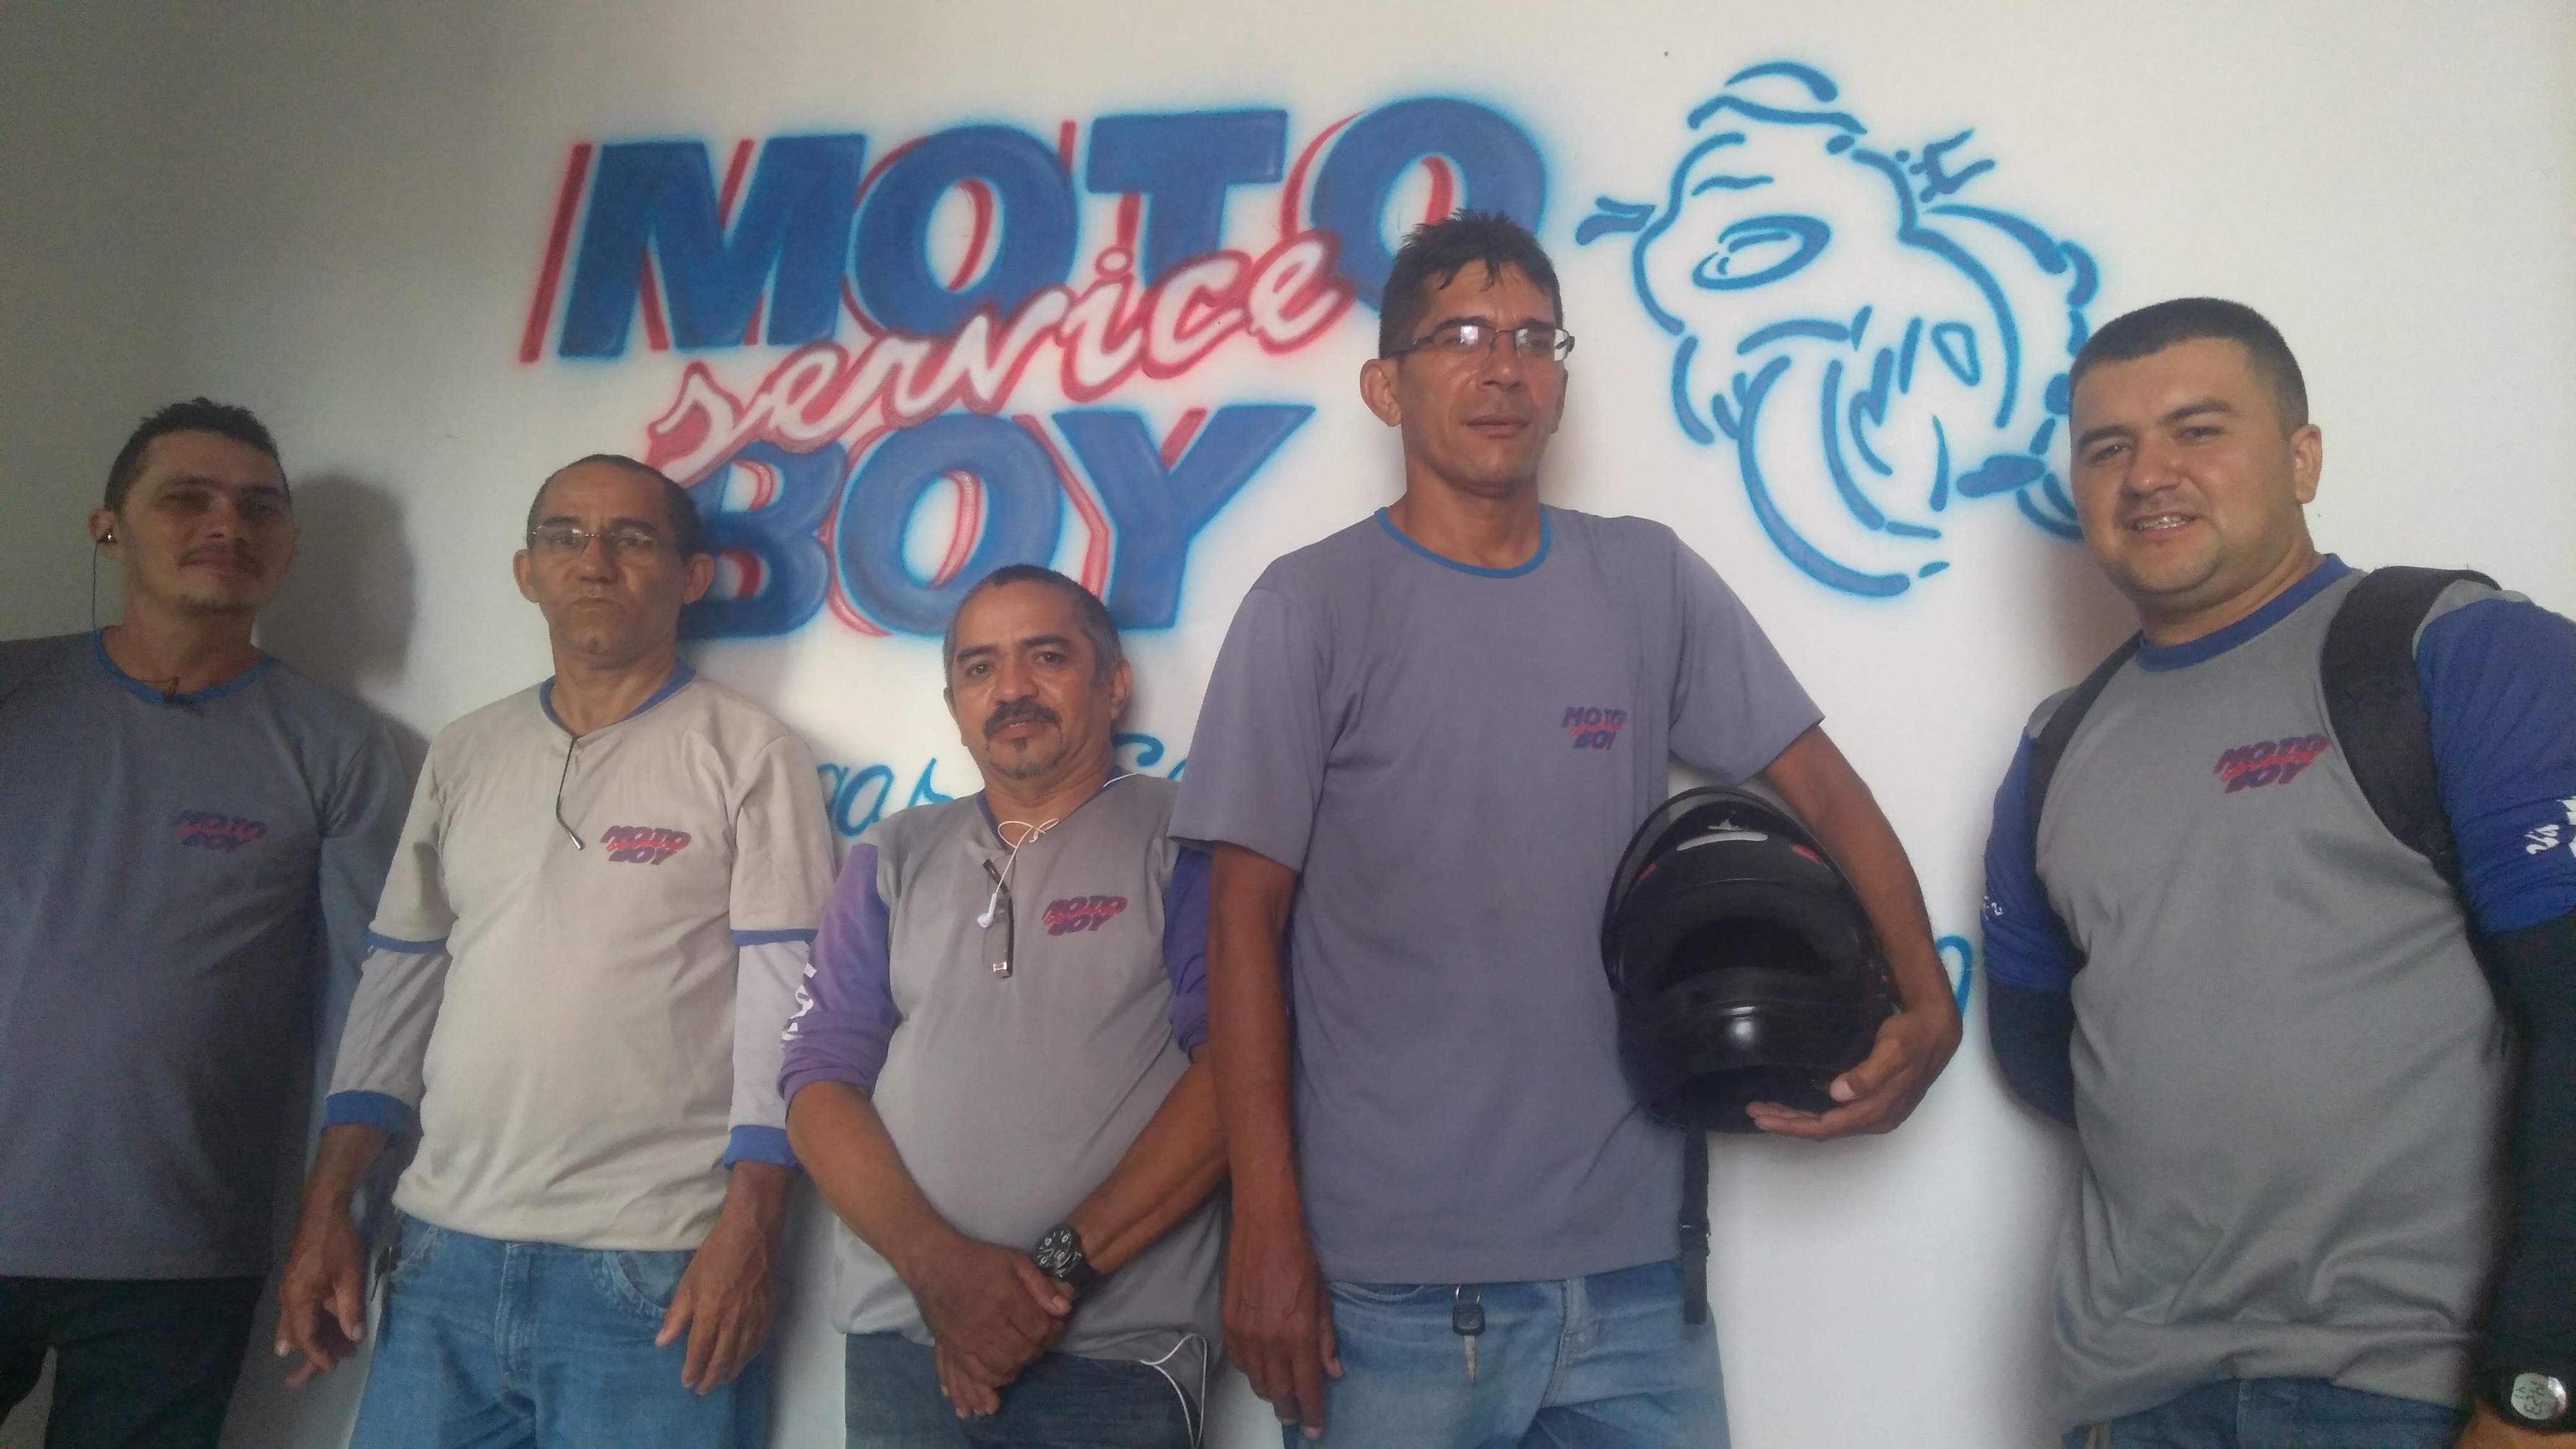 Motoboy - Ce - Serviço De Entrega em Fortaleza e Região Metropolitana